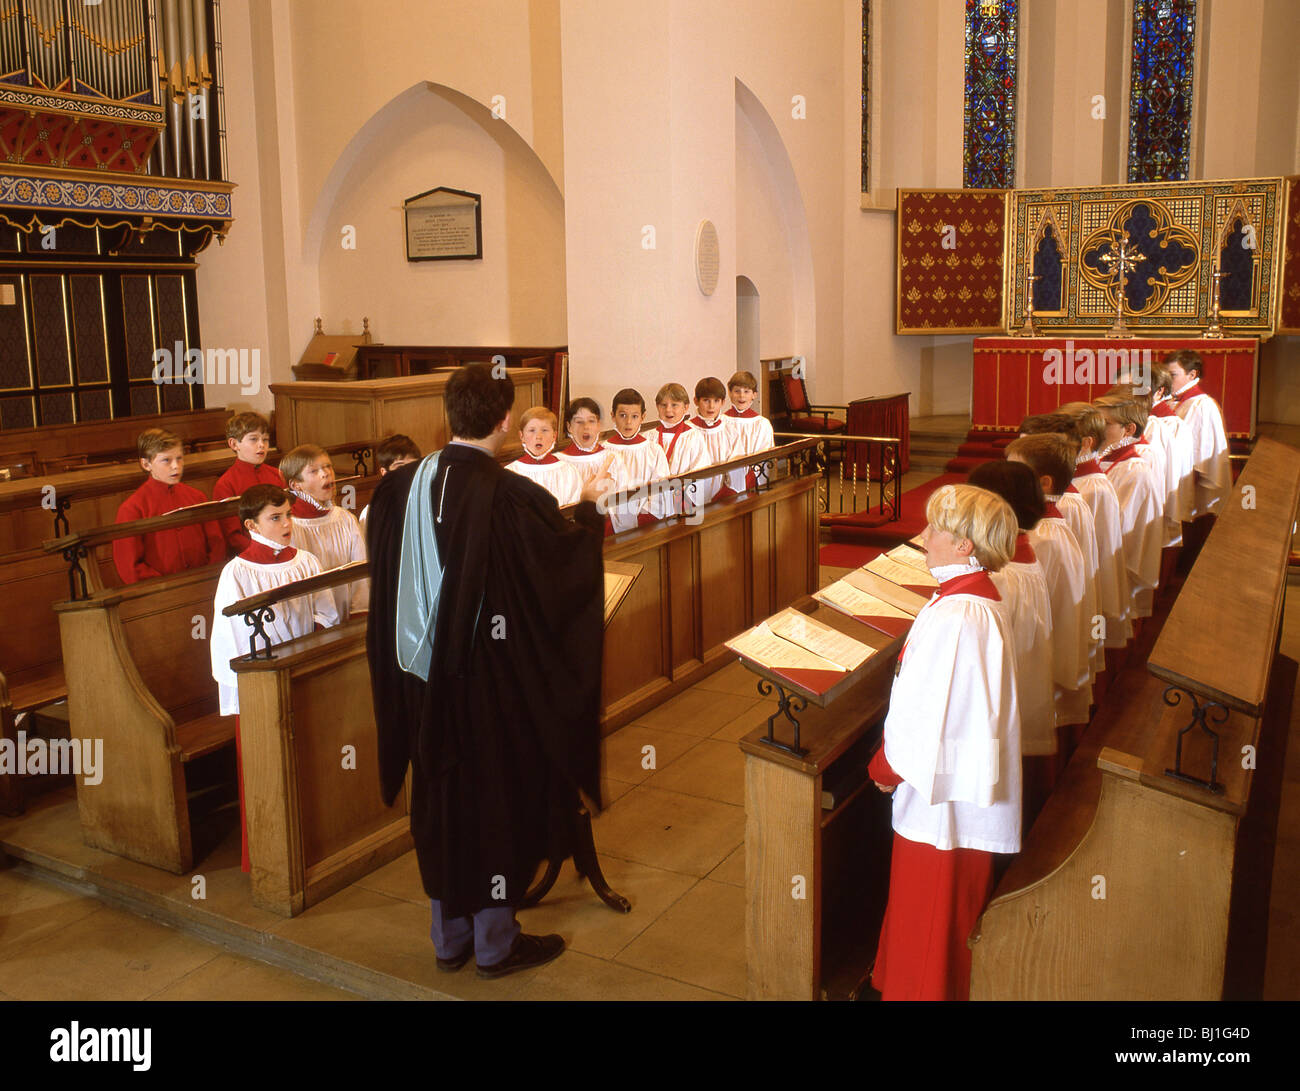 Boy's church choir, Guildford, Surrey, England, United Kingdom Stock Photo